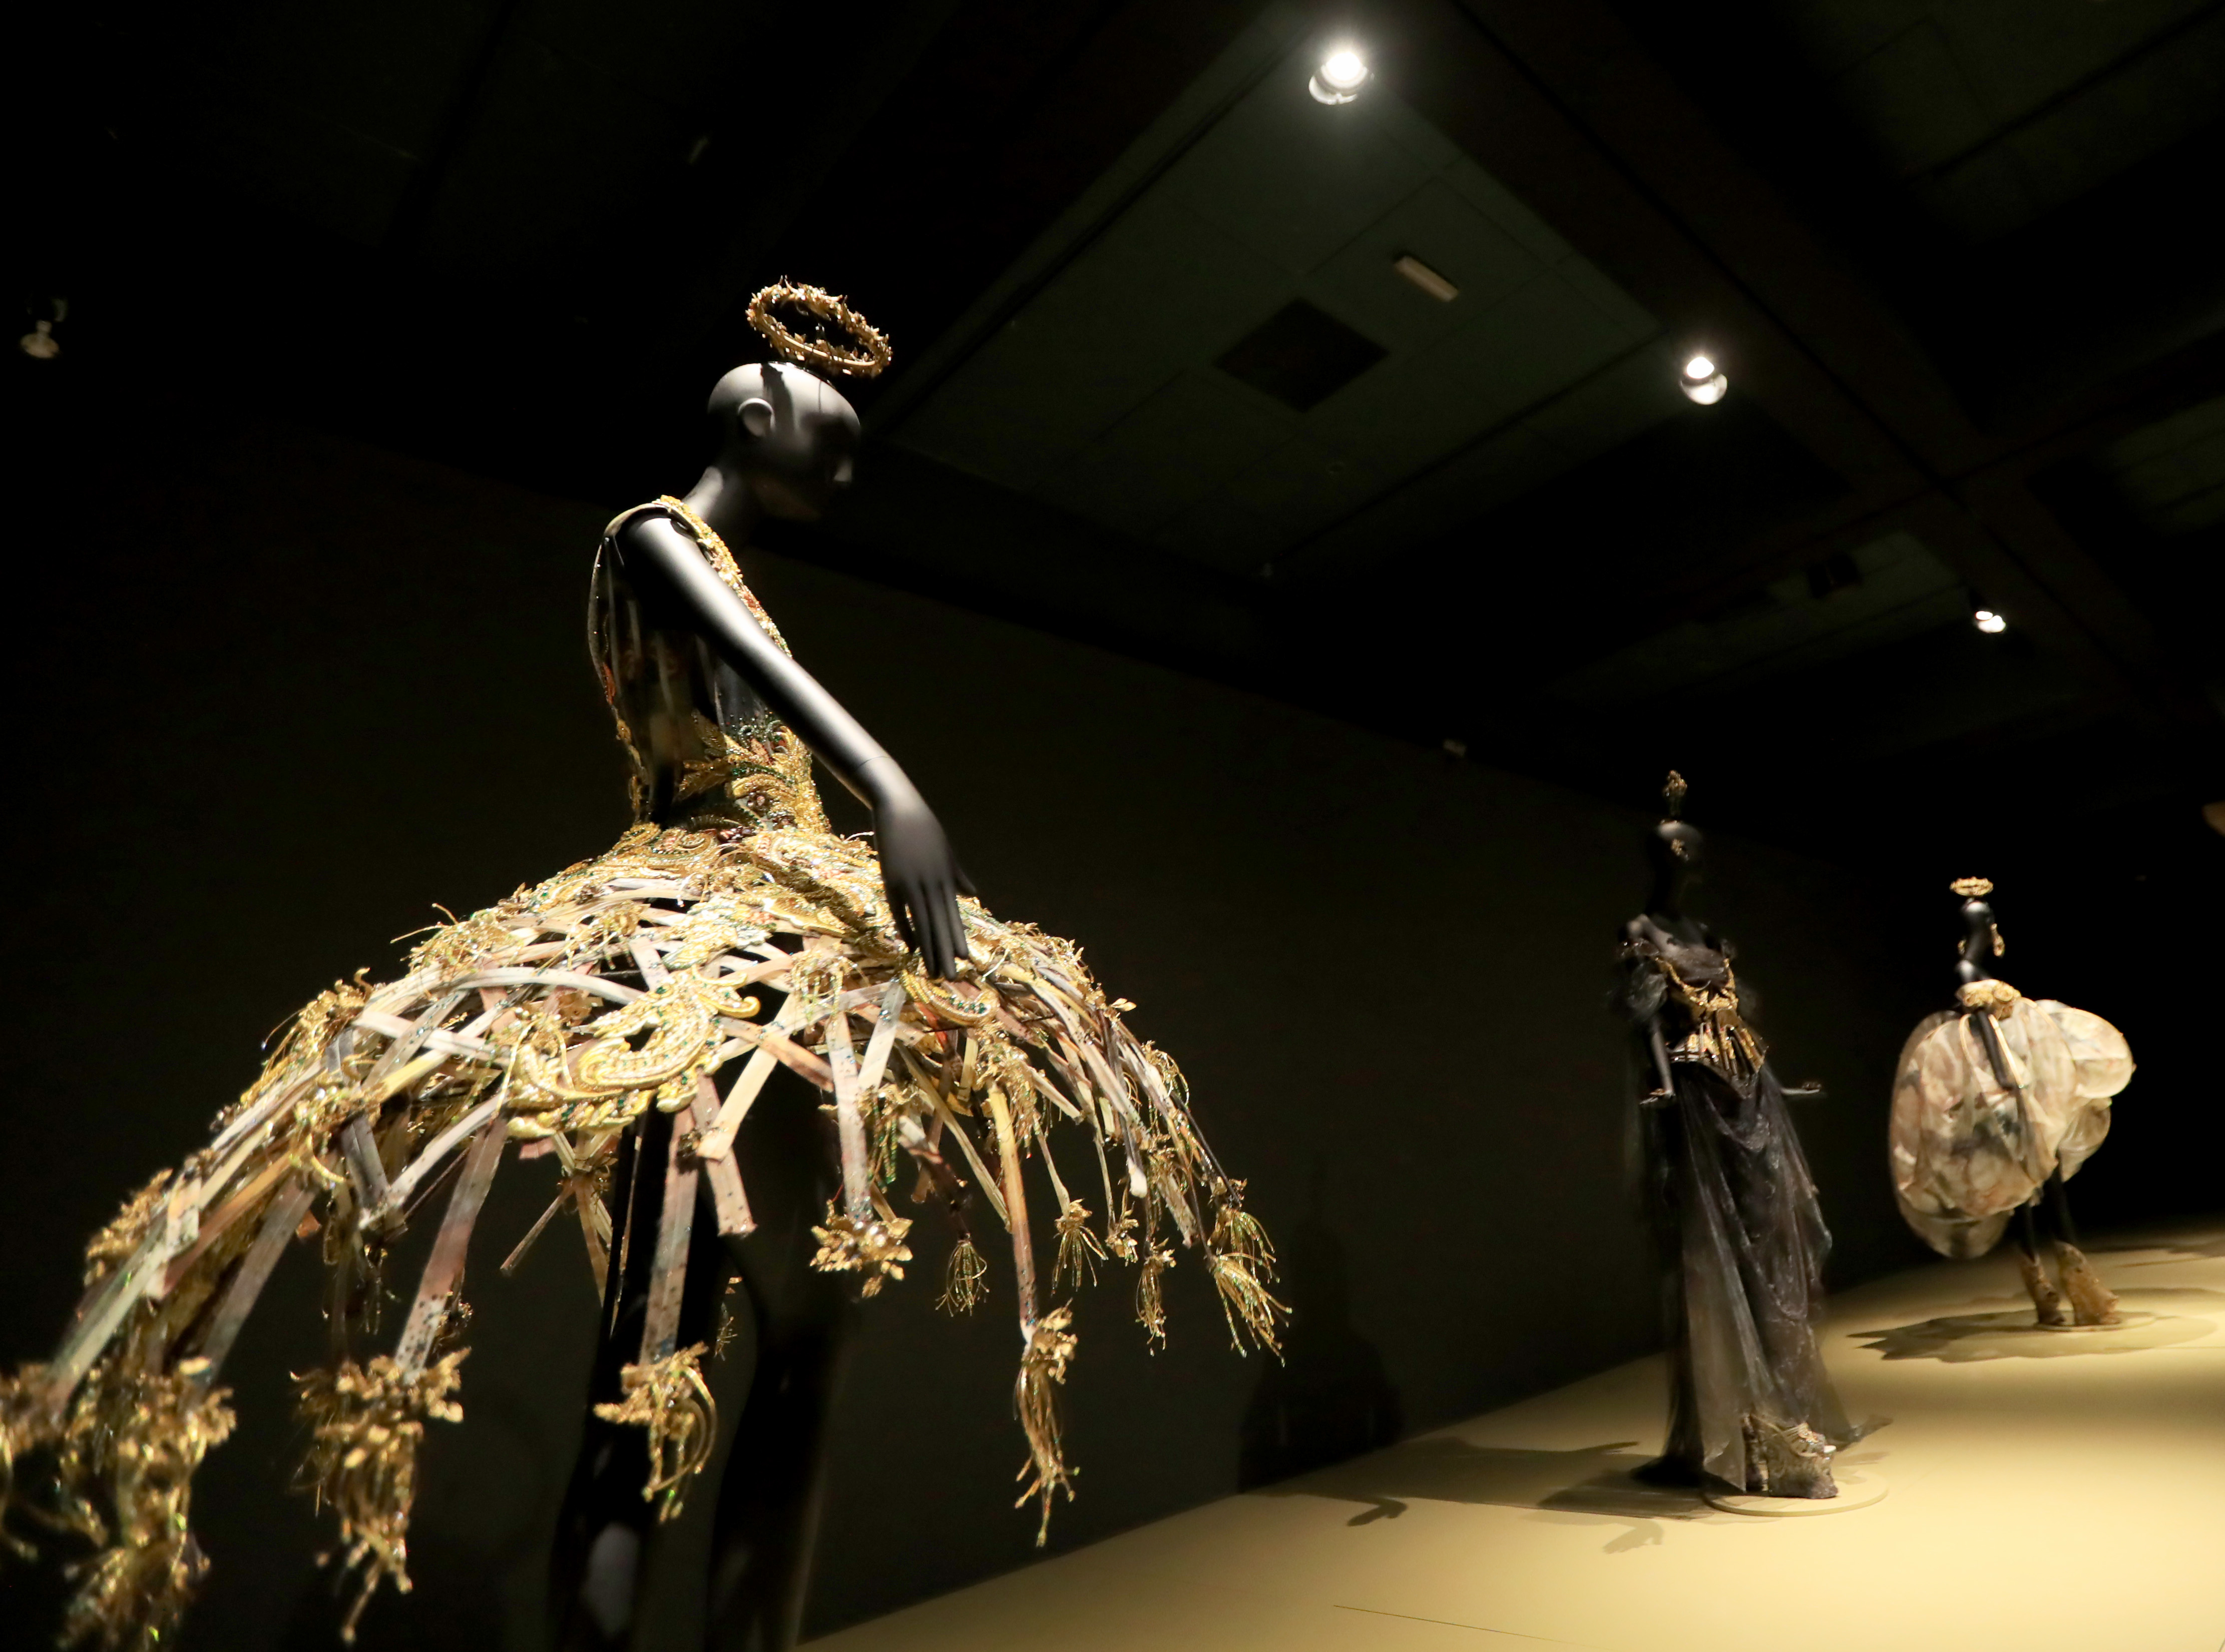 尔博物馆举行的中国著名服装设计师郭培的个人作品展吸引了众多参观者